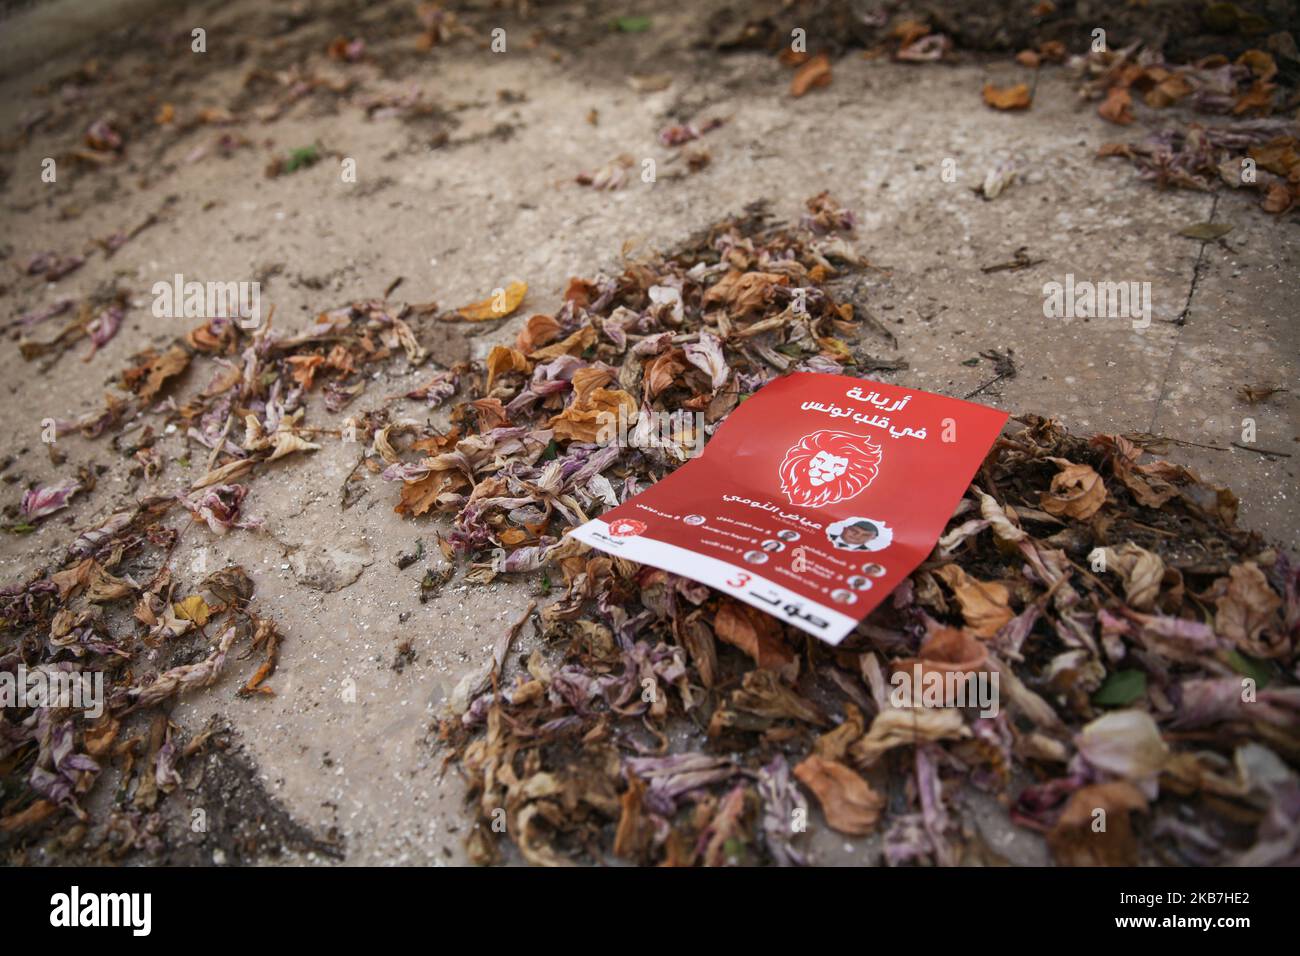 Am 4. Oktober 2019 wurde im nordosttunesischen Ariana ein Wahlzettel der Partei Herz Tunesiens (arabisch: Kalb Tounes) auf den Boden geworfen. Die Parlamentswahlen in Tunesien finden am Sonntag, dem 6. Oktober statt. (Foto von Chedly Ben Ibrahim/NurPhoto) Stockfoto